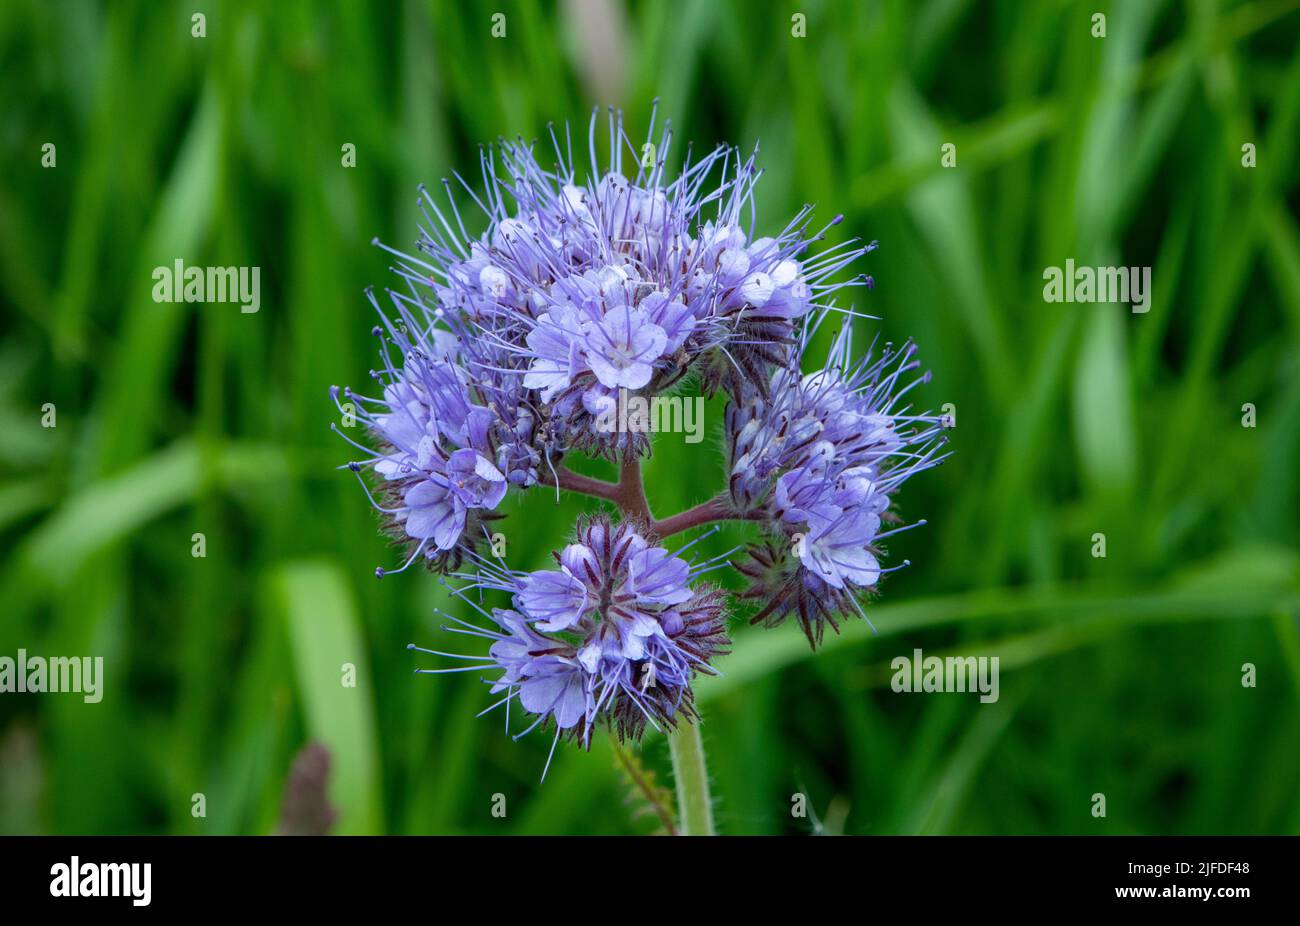 Fiddleneck flowers in field Stock Photo